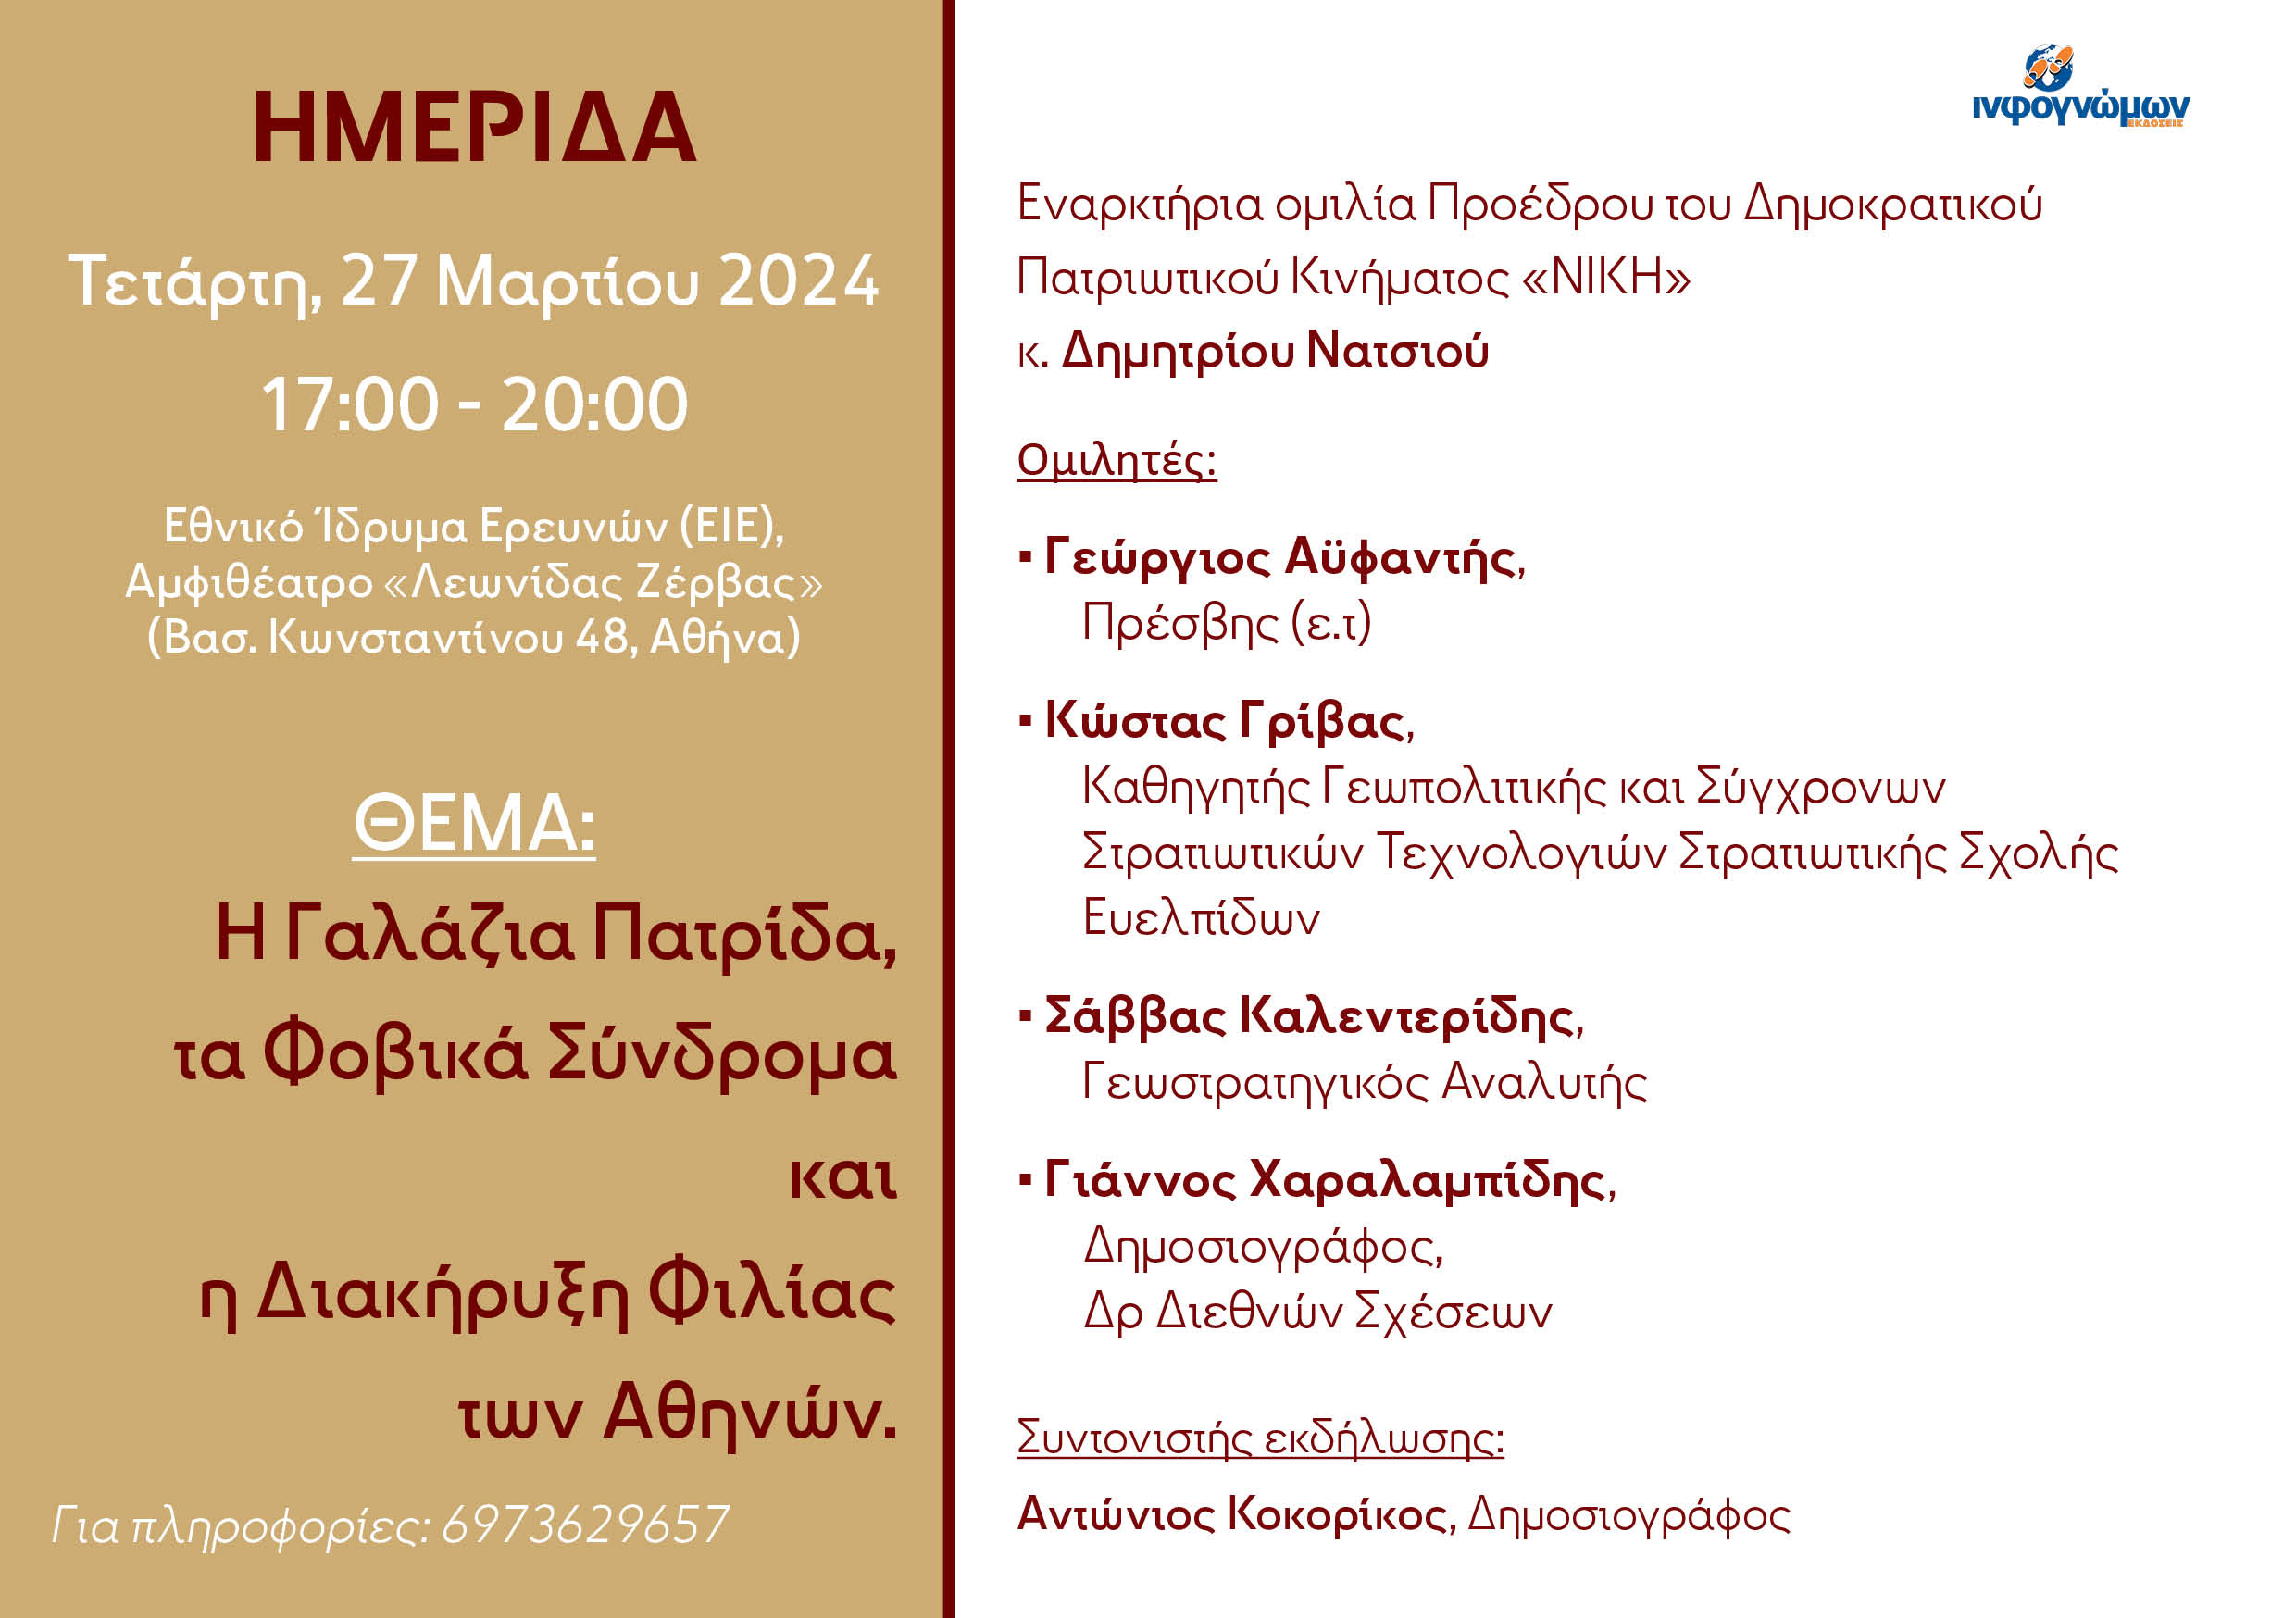 Τετάρτη 27 Μαρτίου η Ημερίδα: “Η Γαλάζια Πατρίδα, τα Φοβικά Σύνδρομα και η Διακήρυξη Φιλίας των Αθηνών”